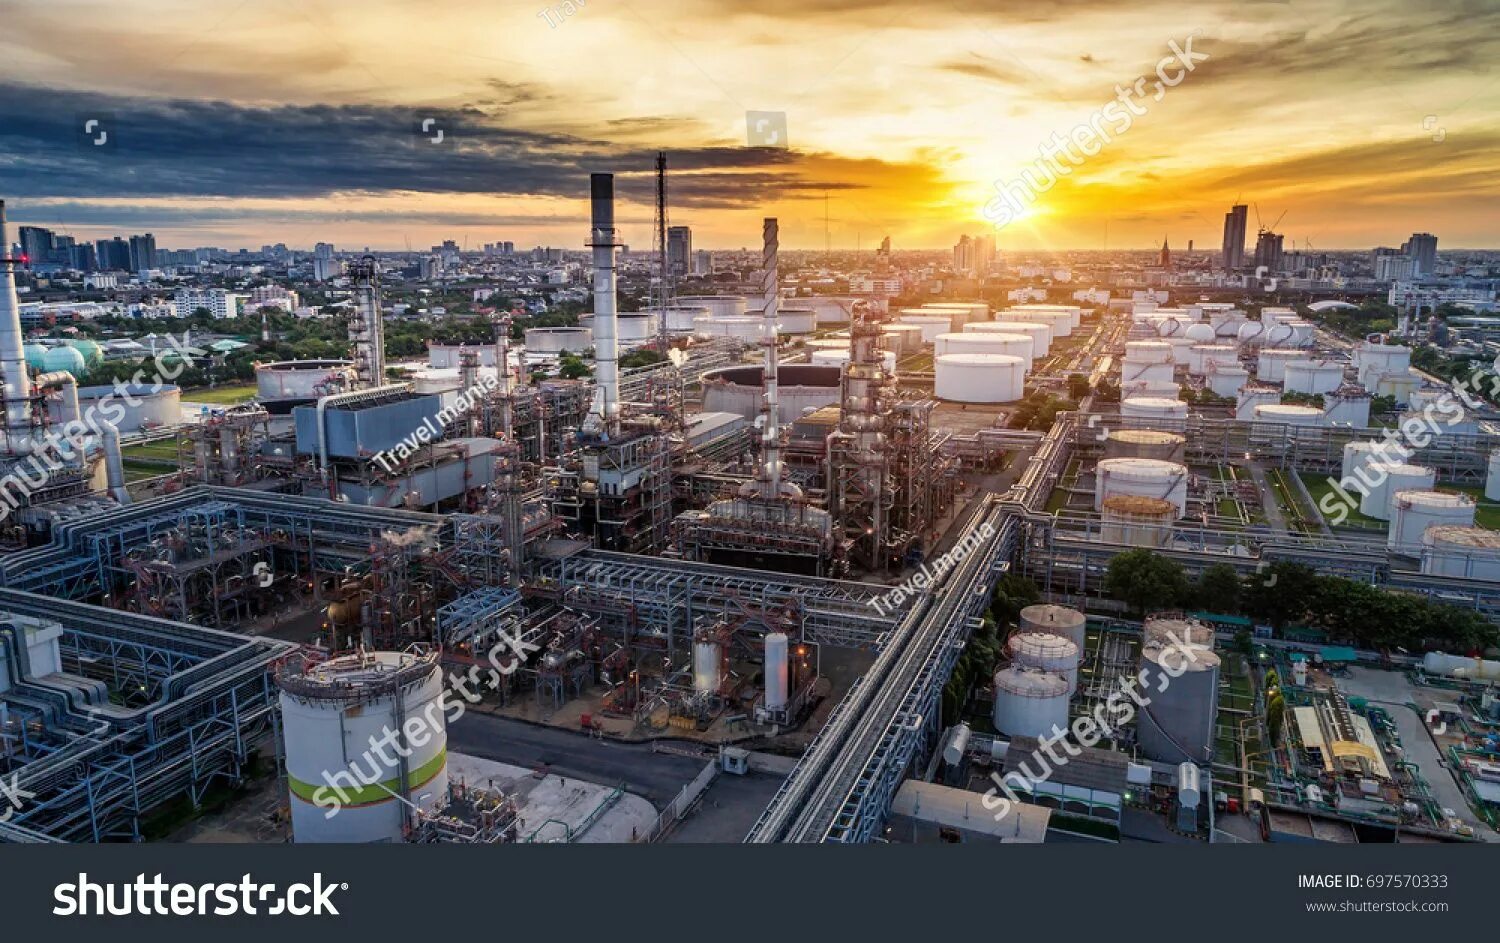 Города индустриальные центры. Нефтеперерабатывающий завод в Таиланде. Роттердамский НПЗ. Промышленность в городе. Промышленный город.